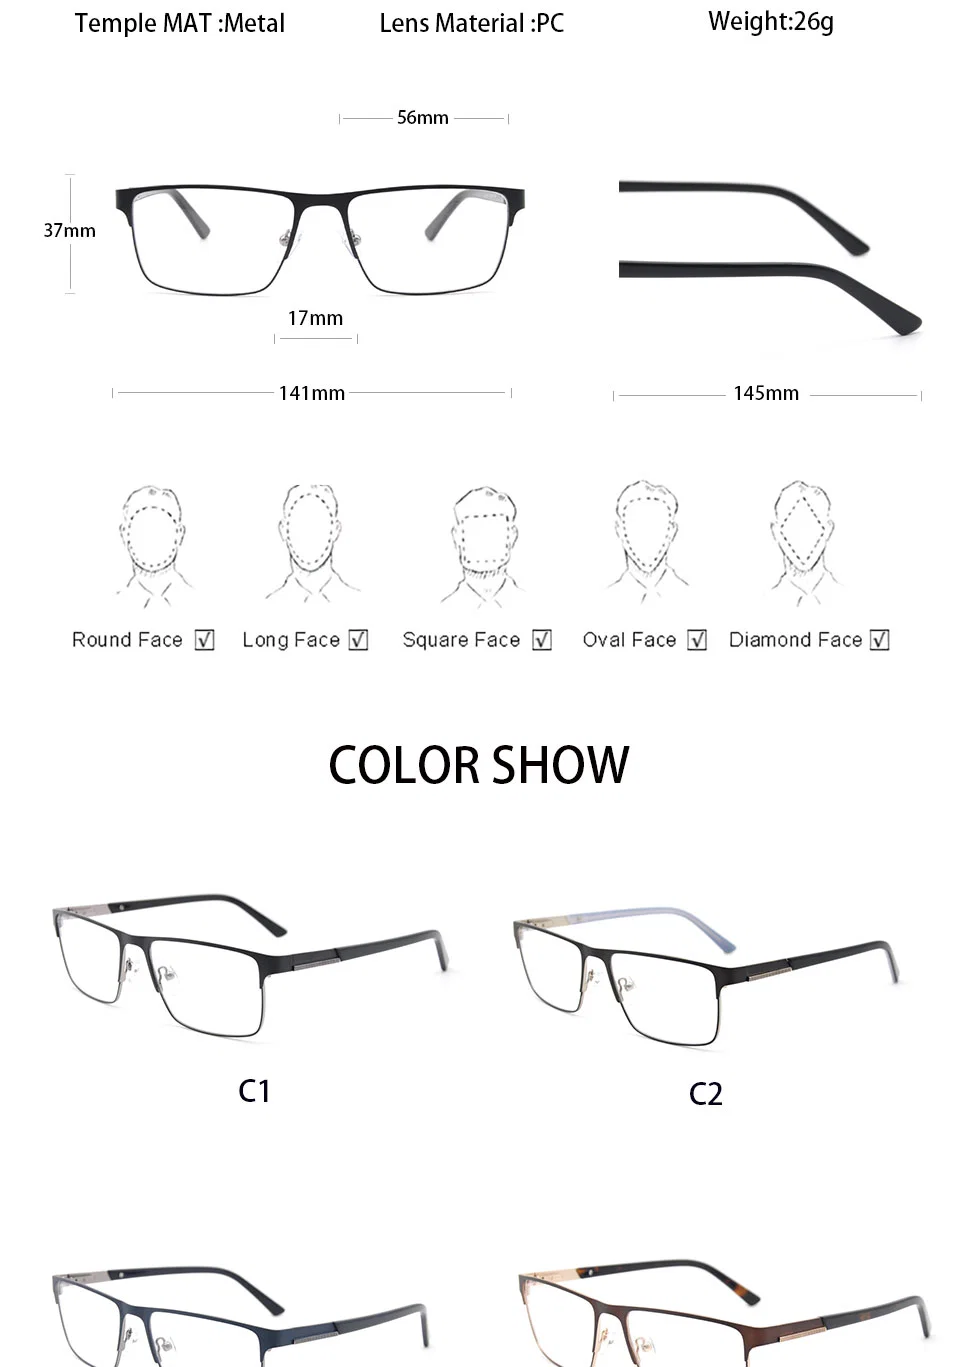 Most Popular CE Stainless Steel Eyeglasses Optical Frame for Men